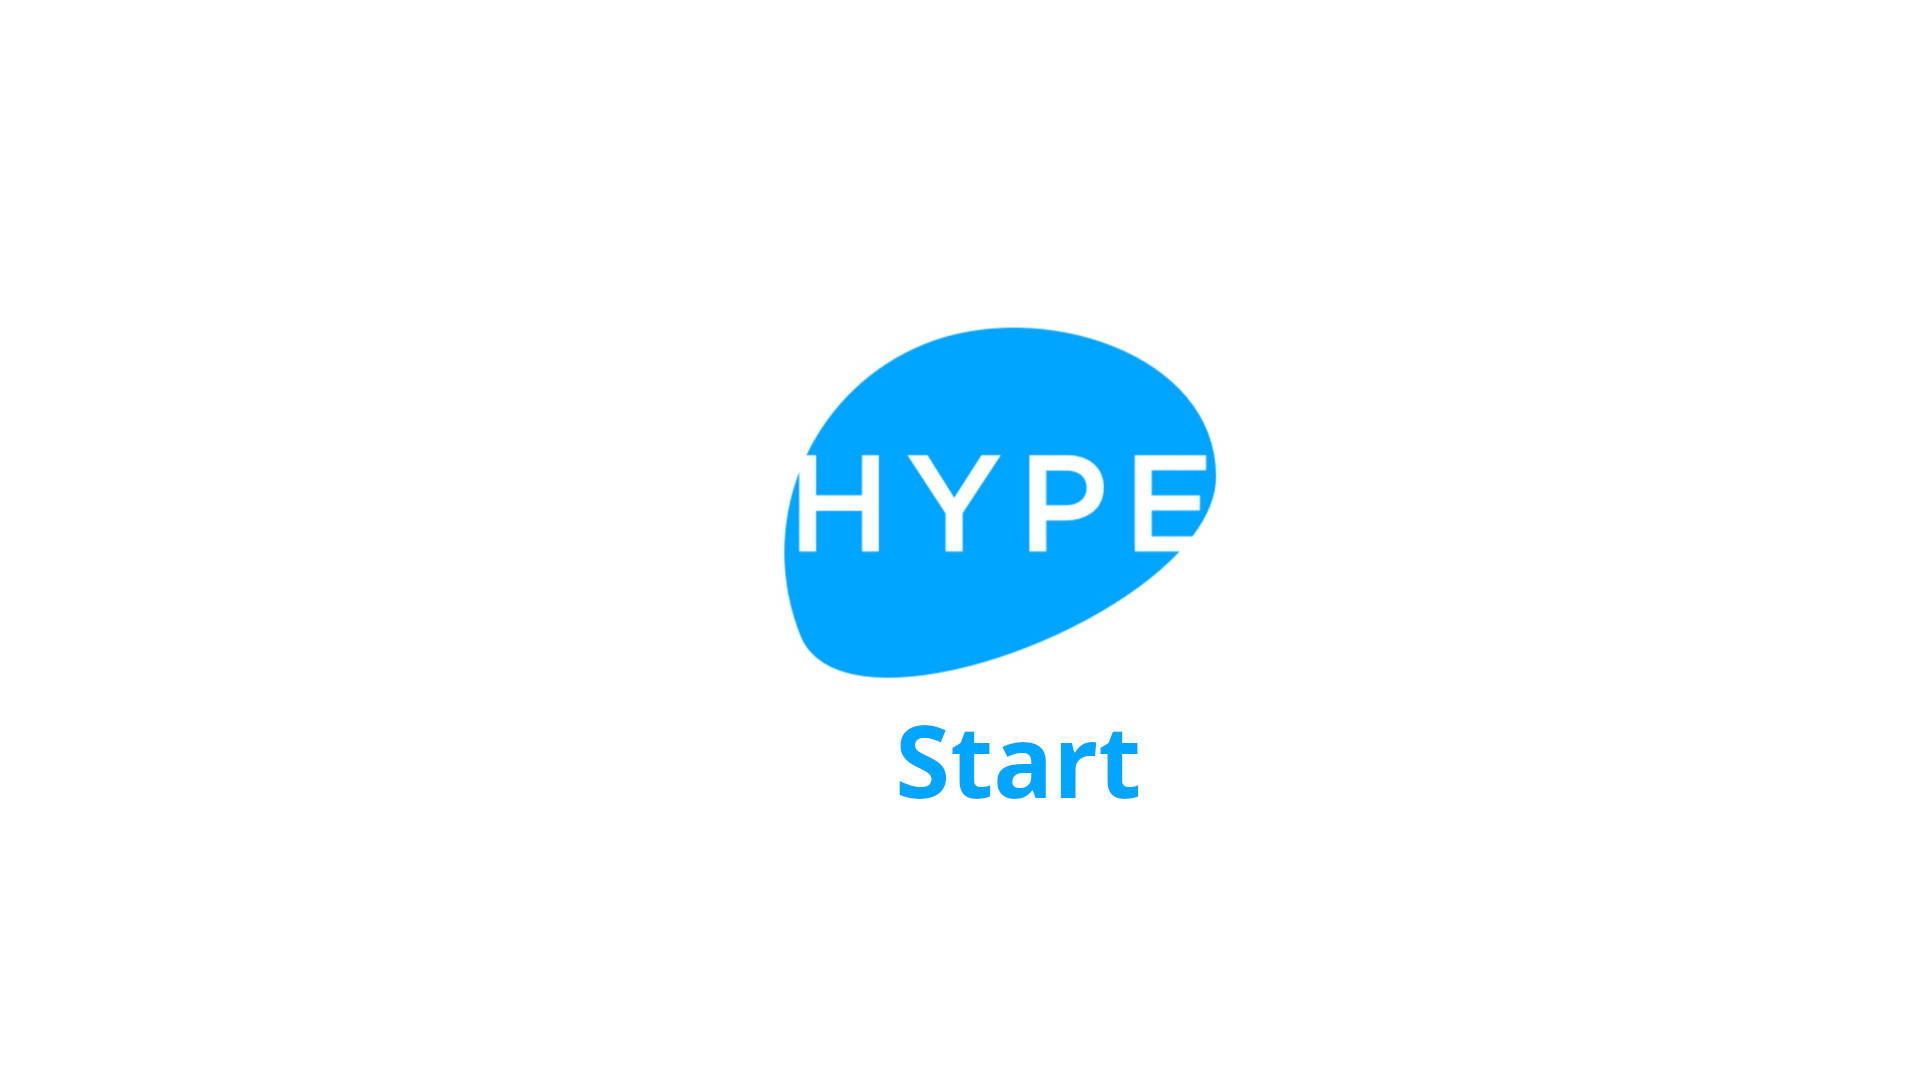 Hype Start Wallpaper